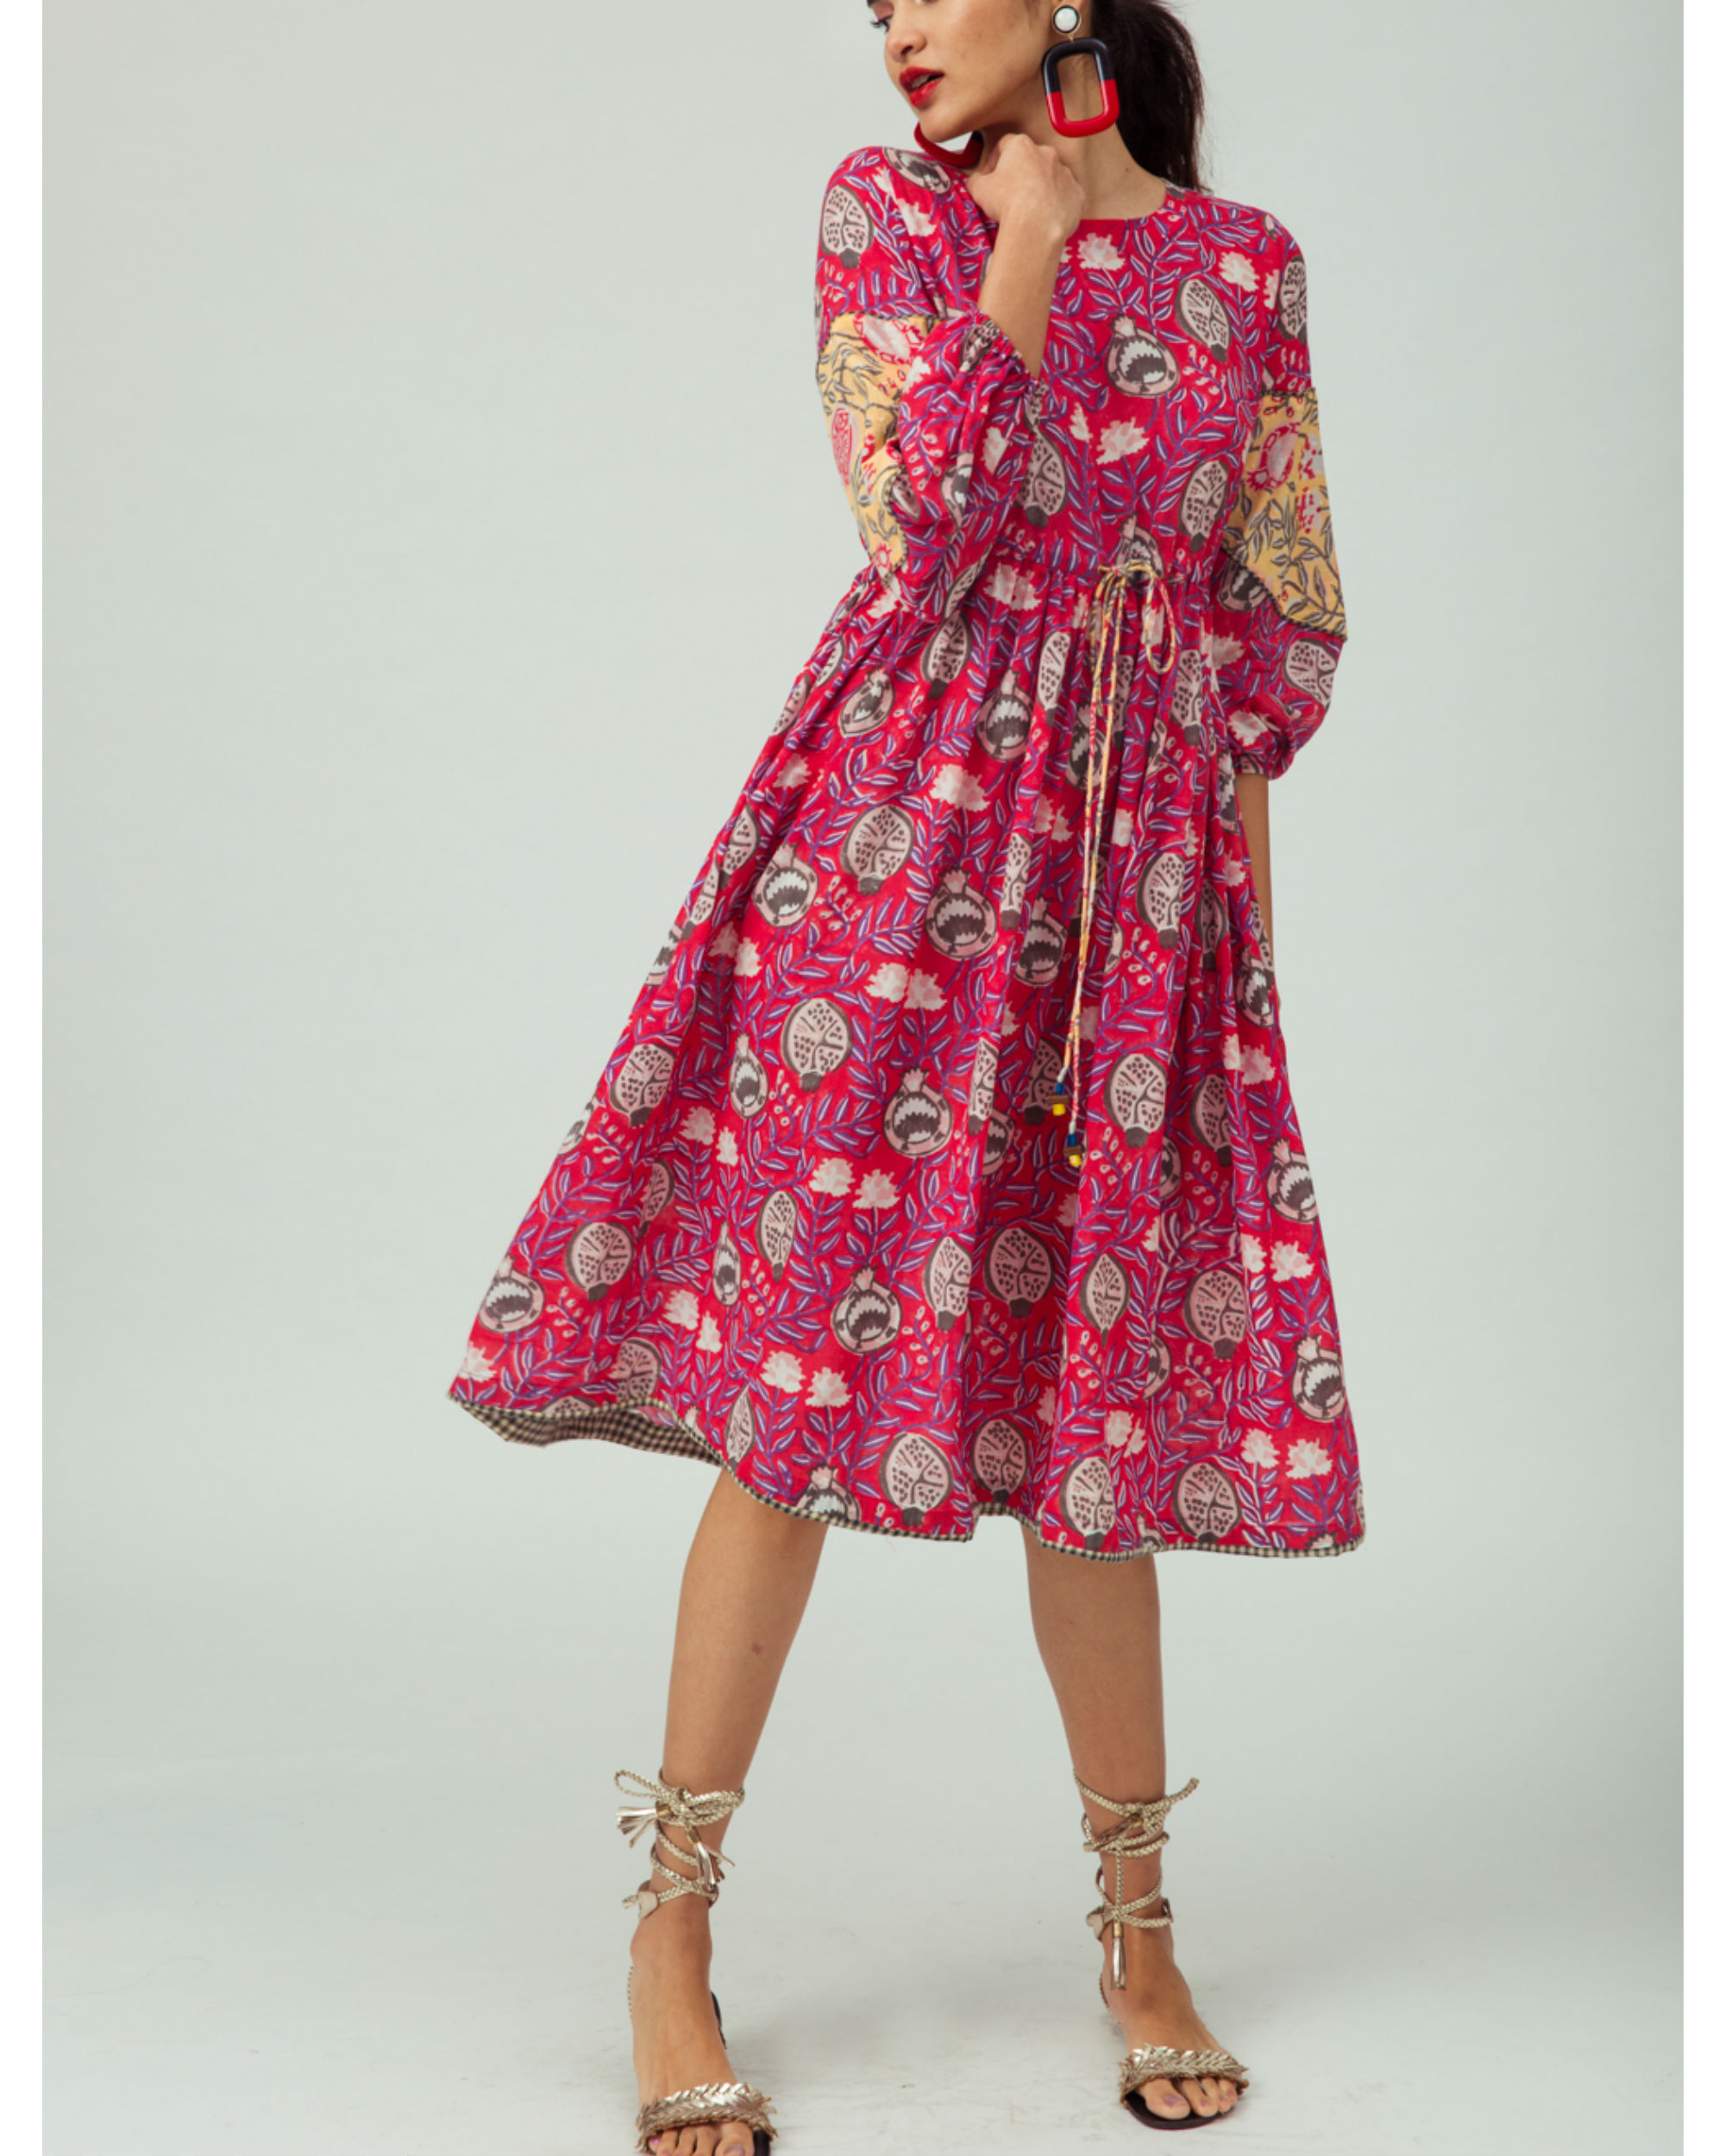 Pomegranate Day Dress by Jodi | The Secret Label